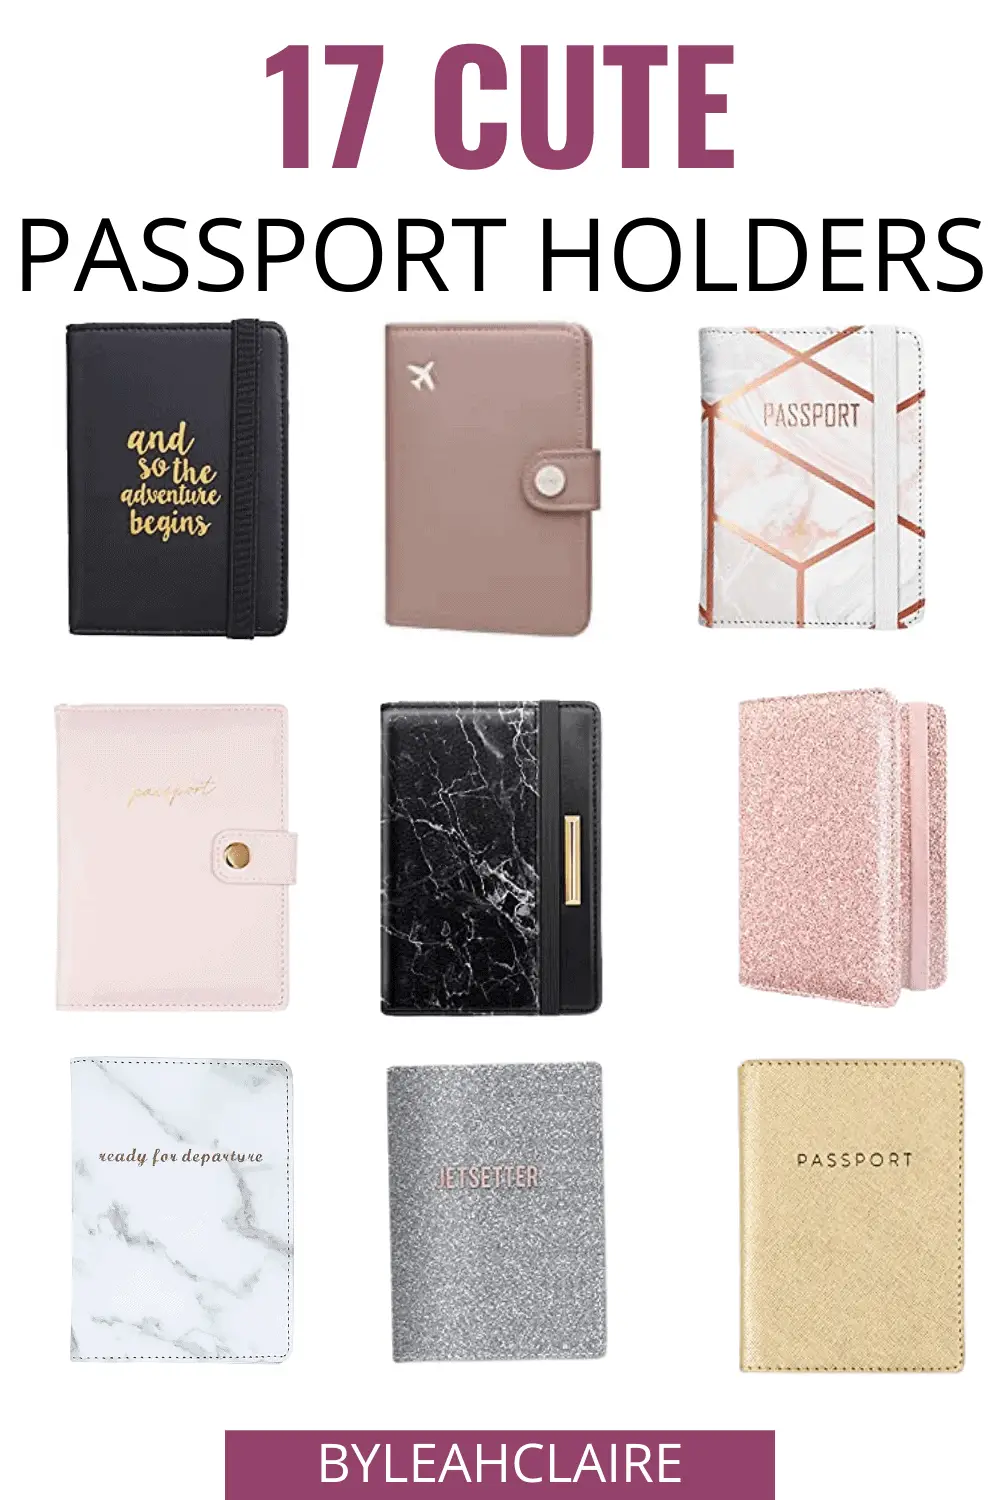 17 Cute Passport Holders for Stylish Travelers